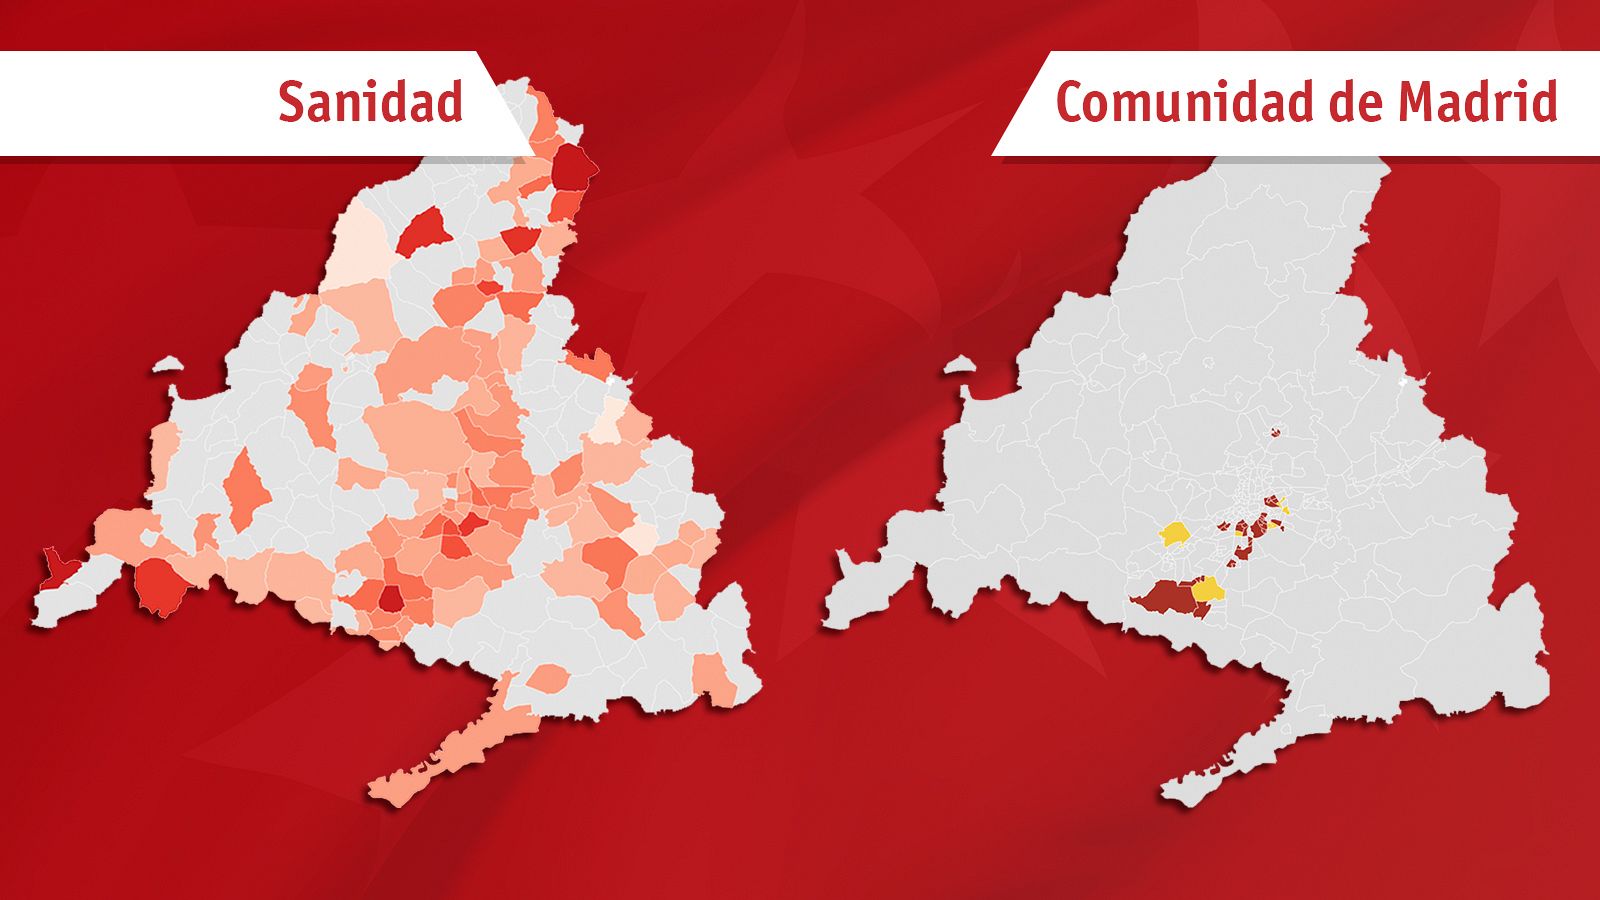 El plan de Sanidad frente al de Madrid en dos mapas